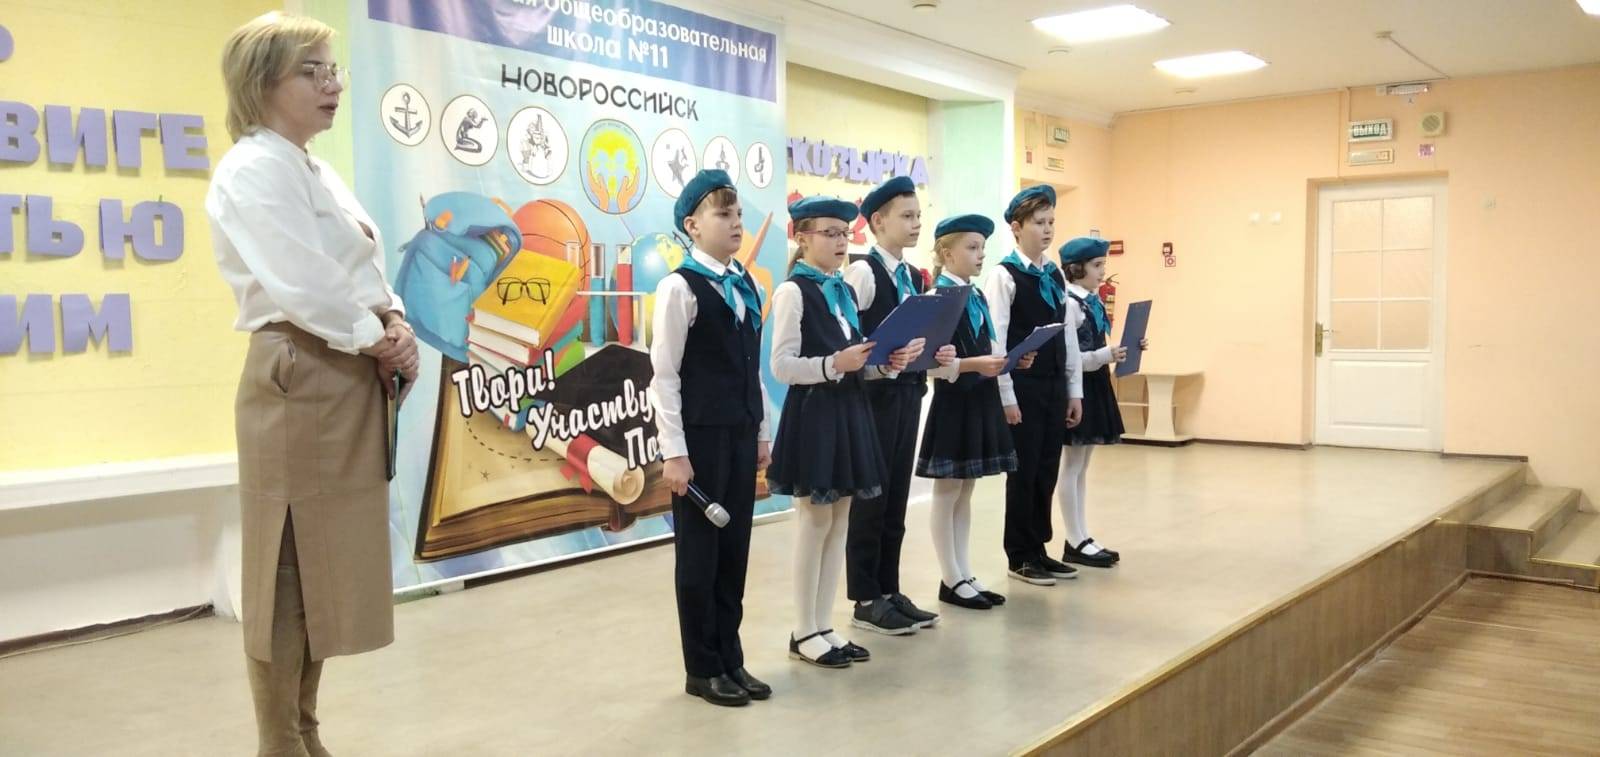 4 «Б» начальной школы в Новороссийске знает, что такое патриотизм